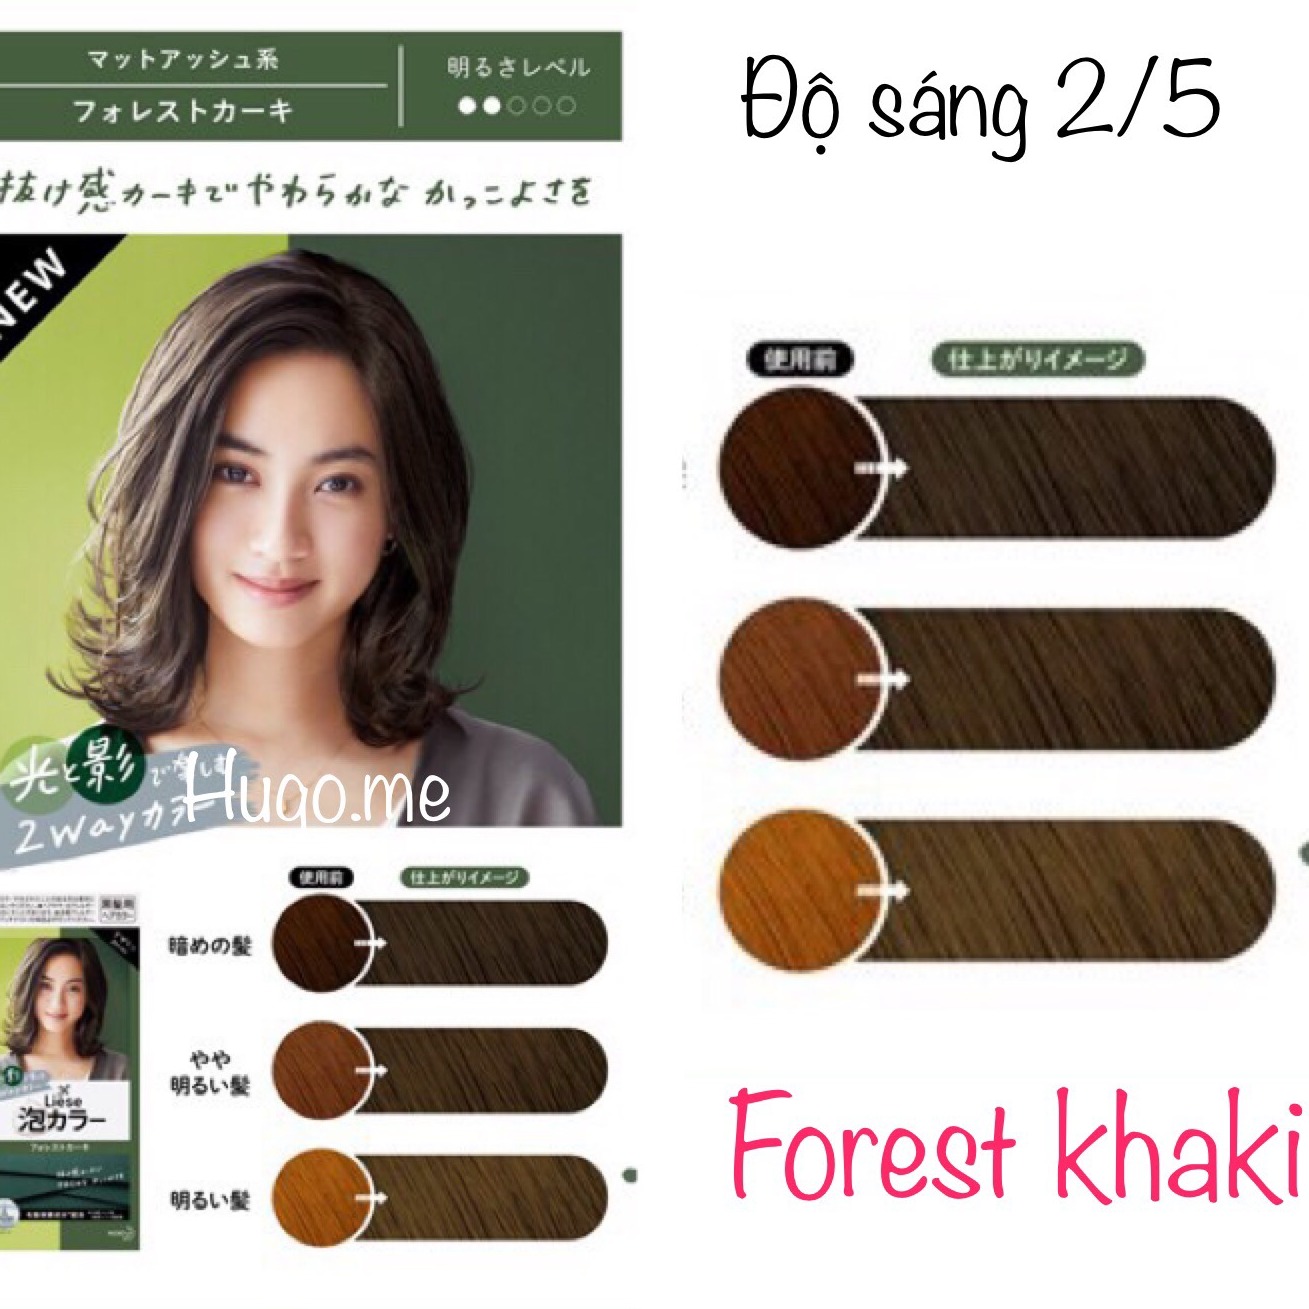 Tạo phong cách mới cho mái tóc của bạn với thuốc nhuộm tóc tạo bọt Kao Liese Forest Khaki. Với hỗn hợp tuyệt vời của màu nâu và xám, bạn sẽ trông thật phong cách và cuốn hút. Khám phá sản phẩm ngay bằng cách nhấn vào hình ảnh.